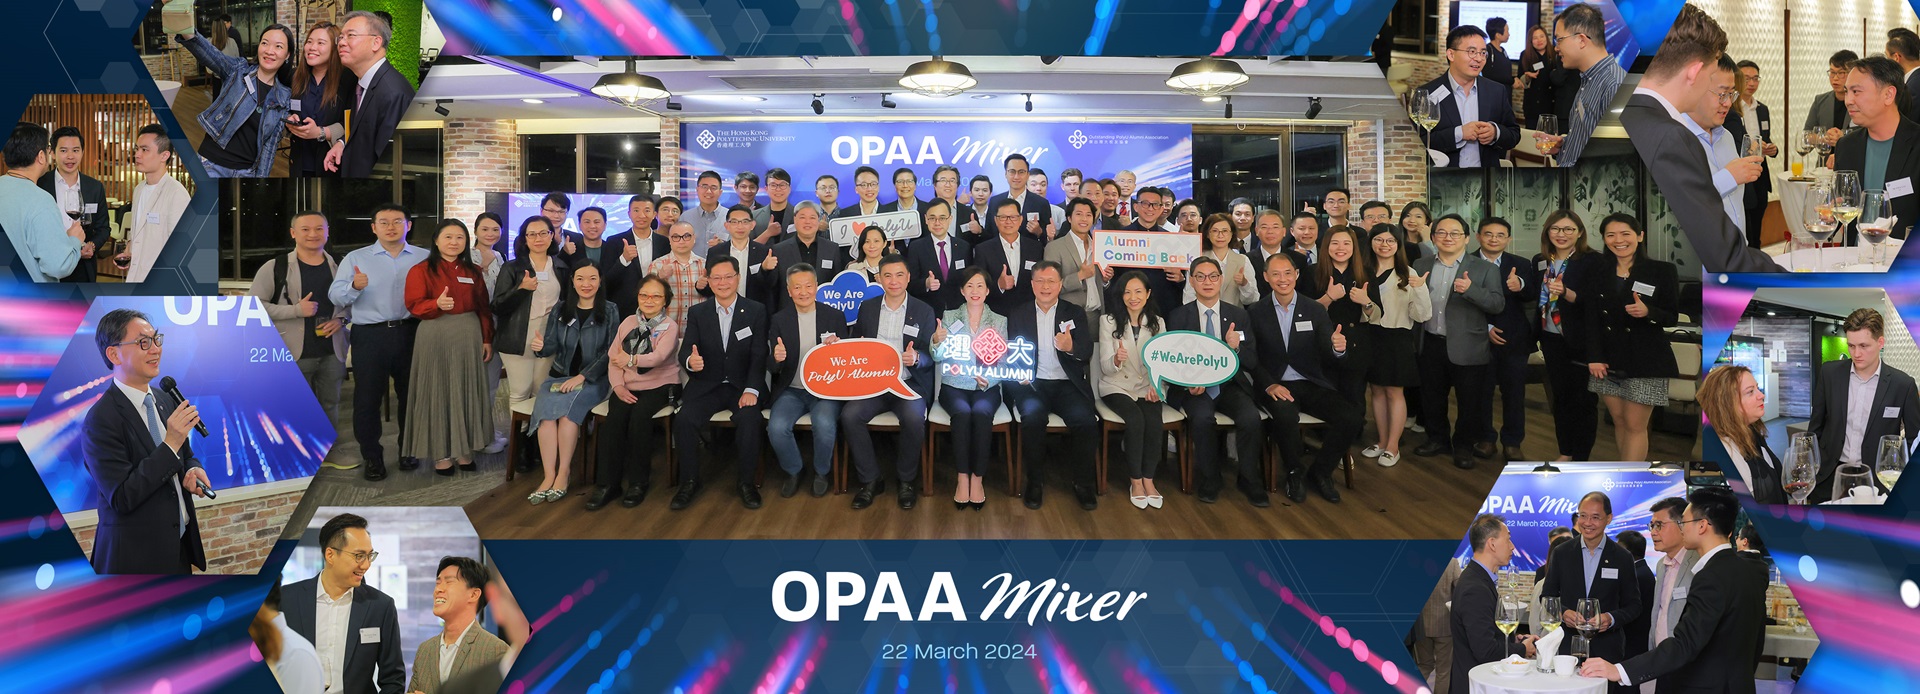 OPAA_Mixer_herobanner_v1d